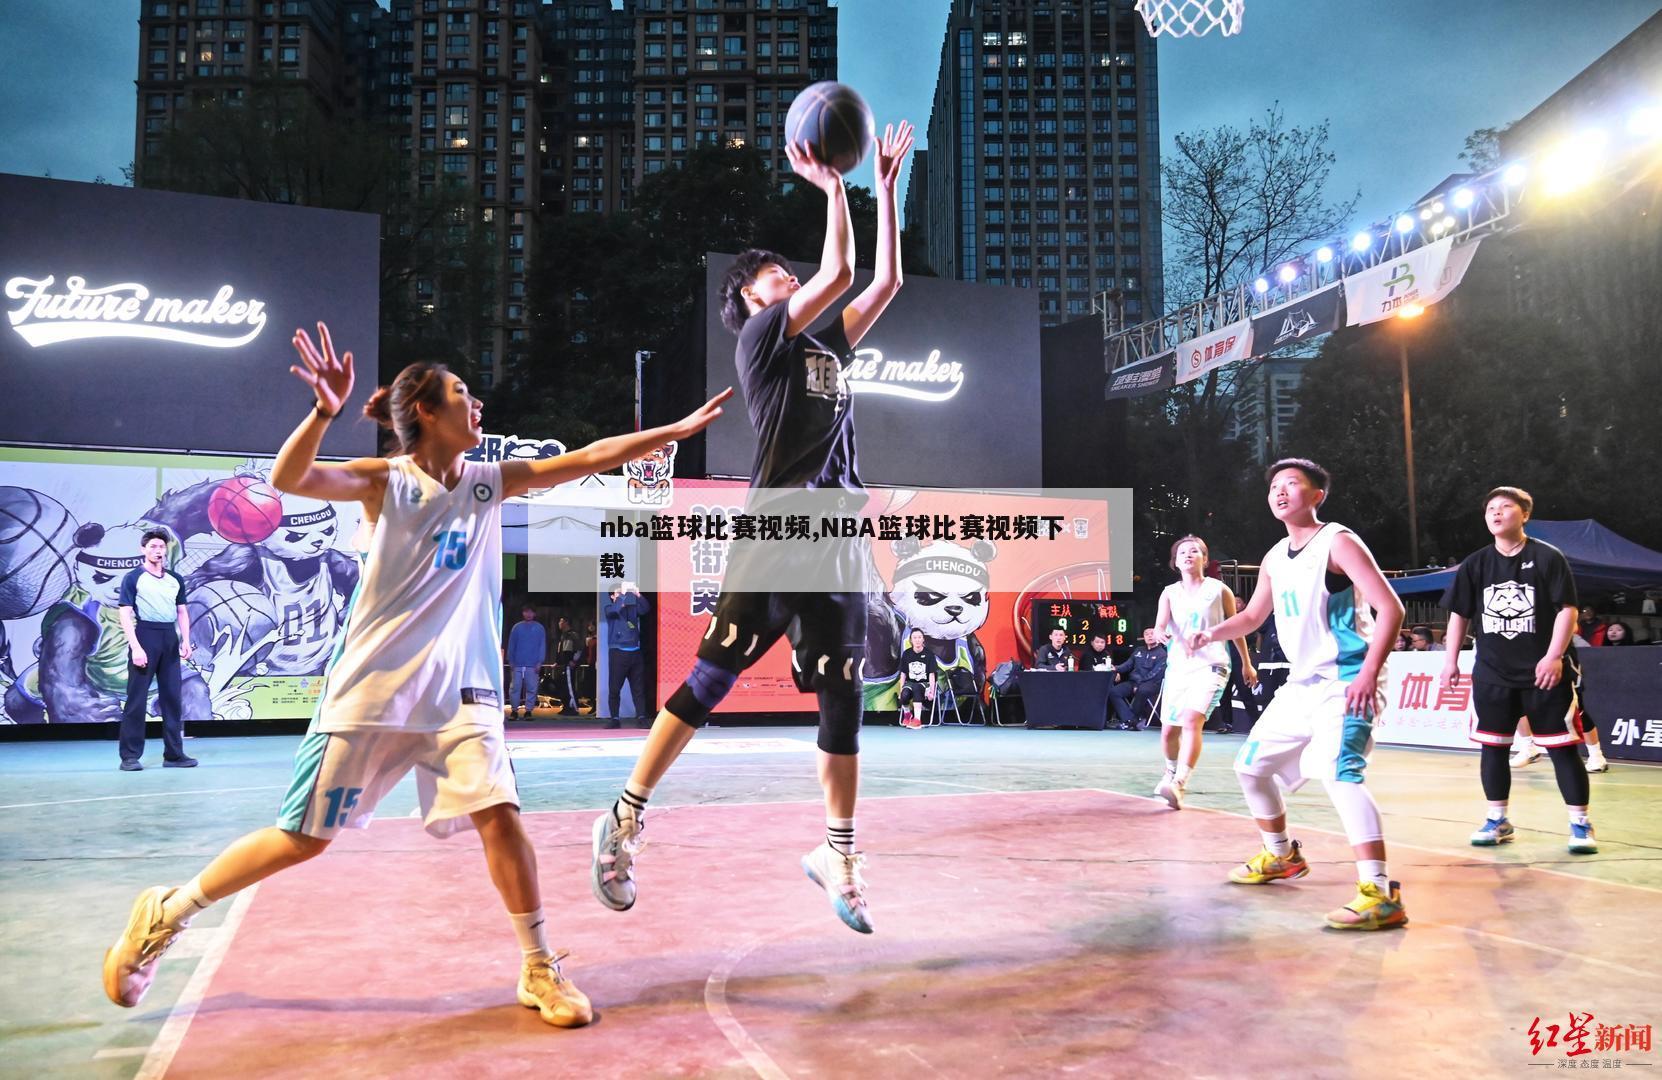 nba篮球比赛视频,NBA篮球比赛视频下载